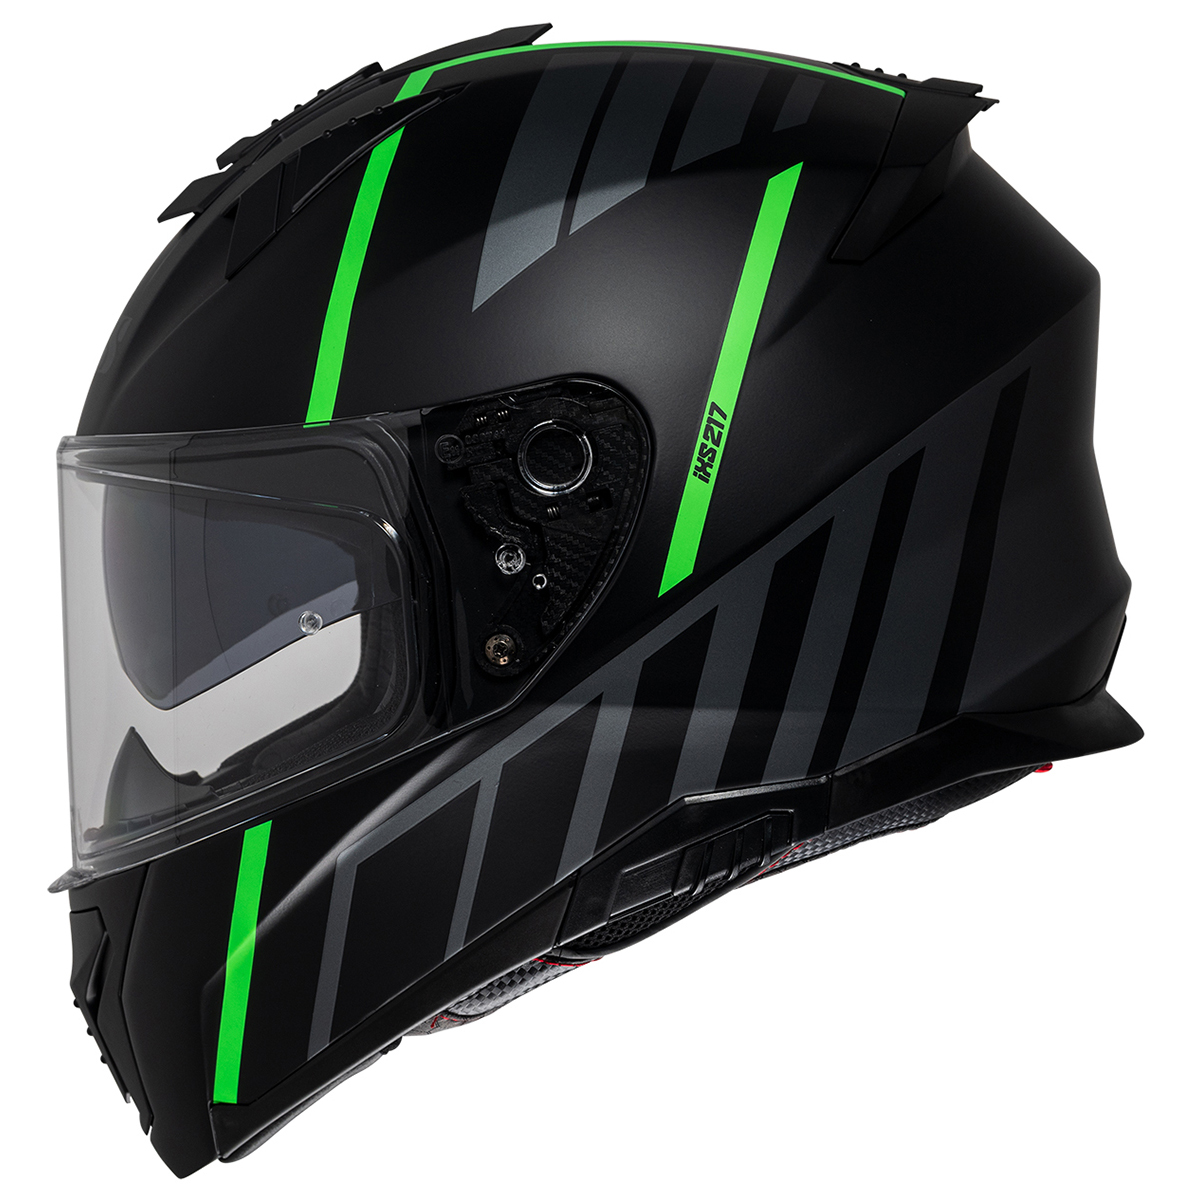 iXS Helm iXS217 2.0, schwarz-fluogrün matt